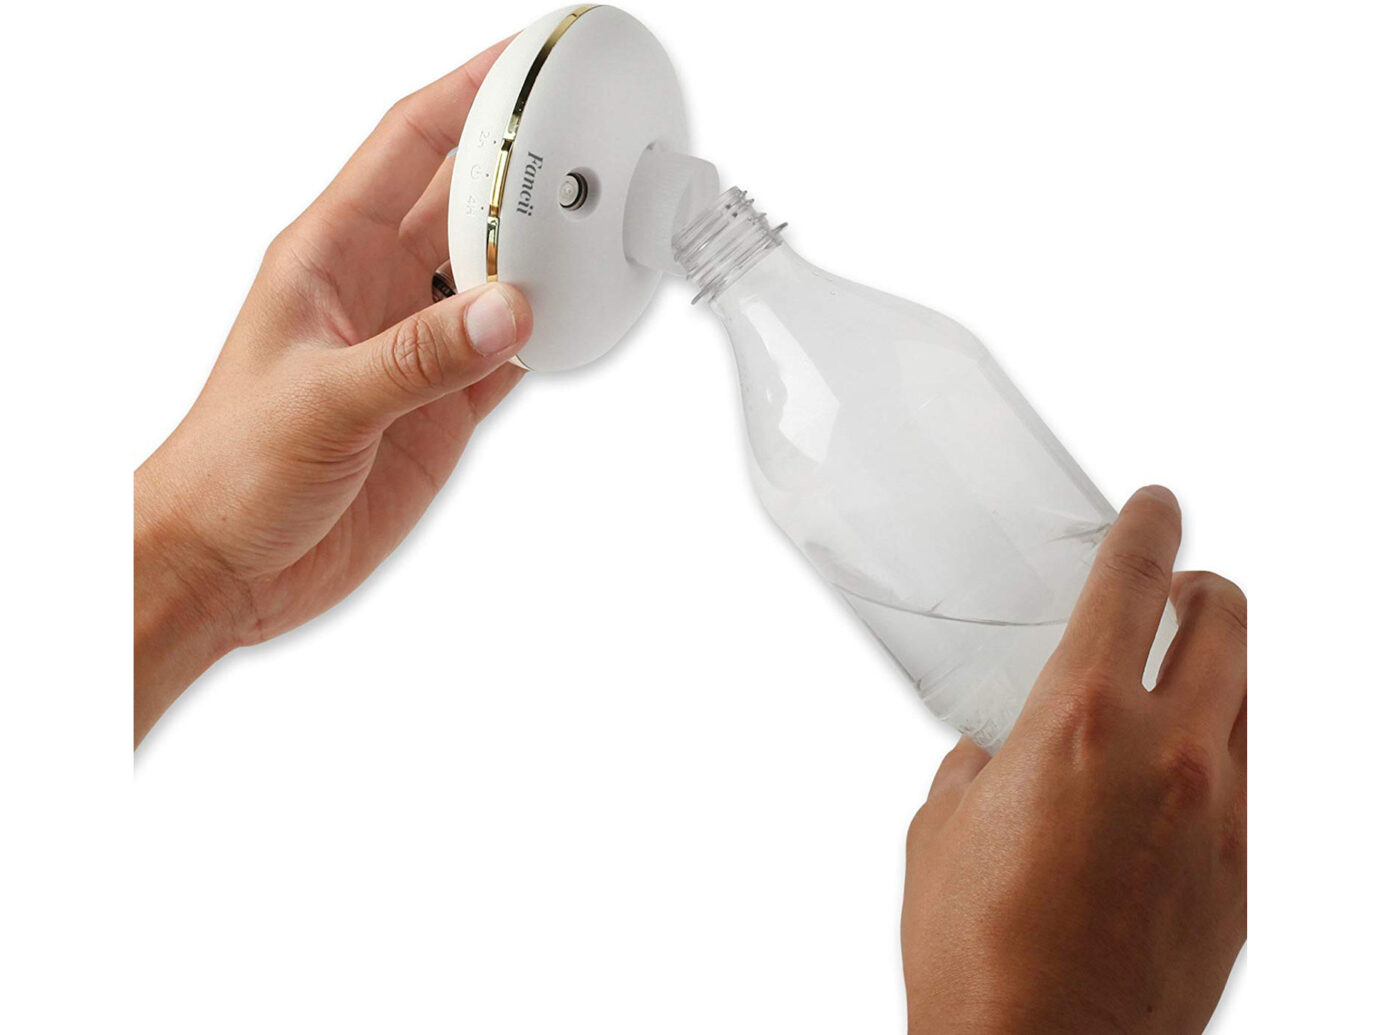 Fancii Cool Mist Personal Mini Humidifier